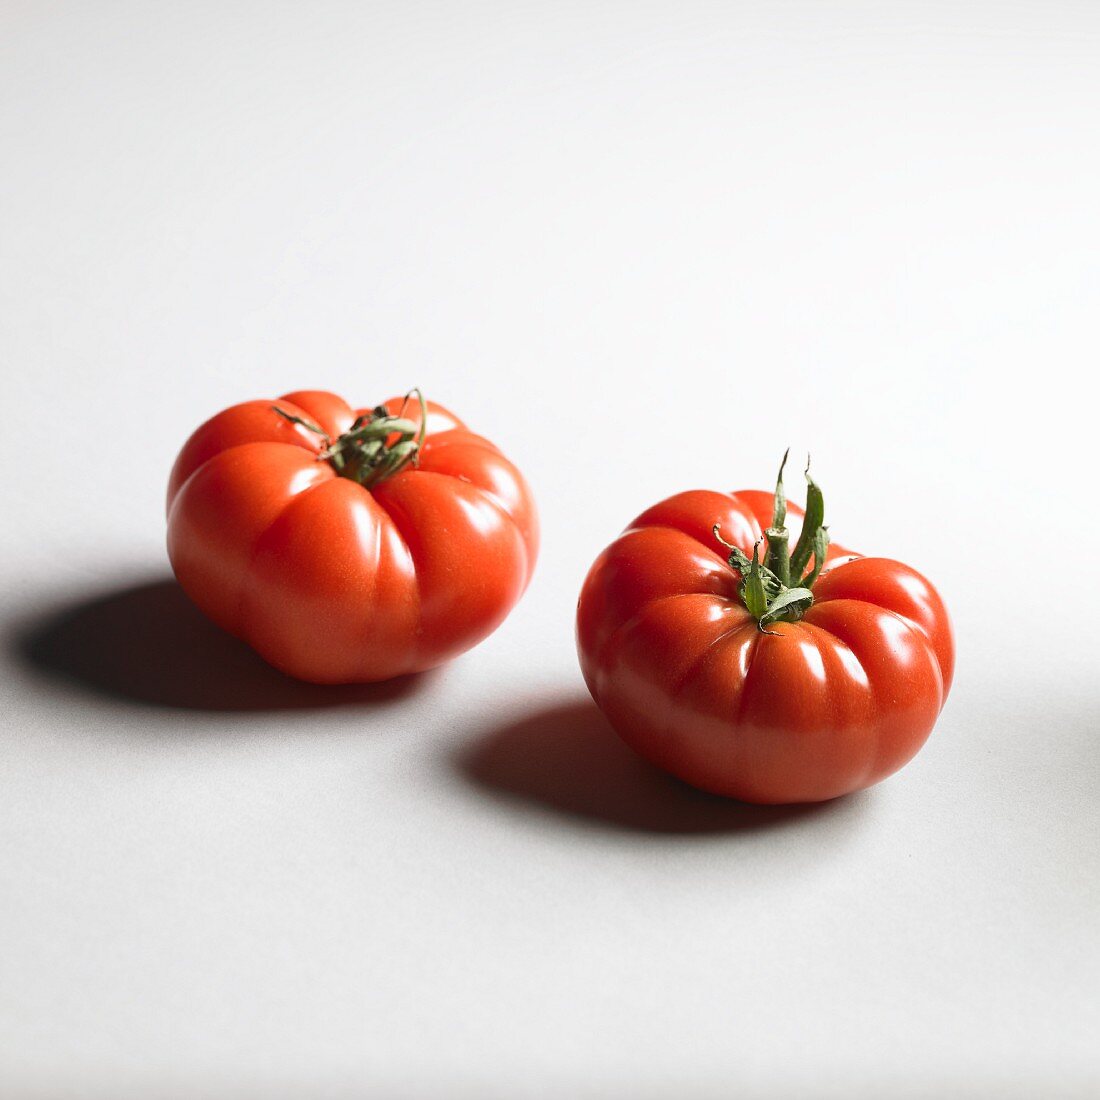 Zwei Tomaten der Sorte Red Star